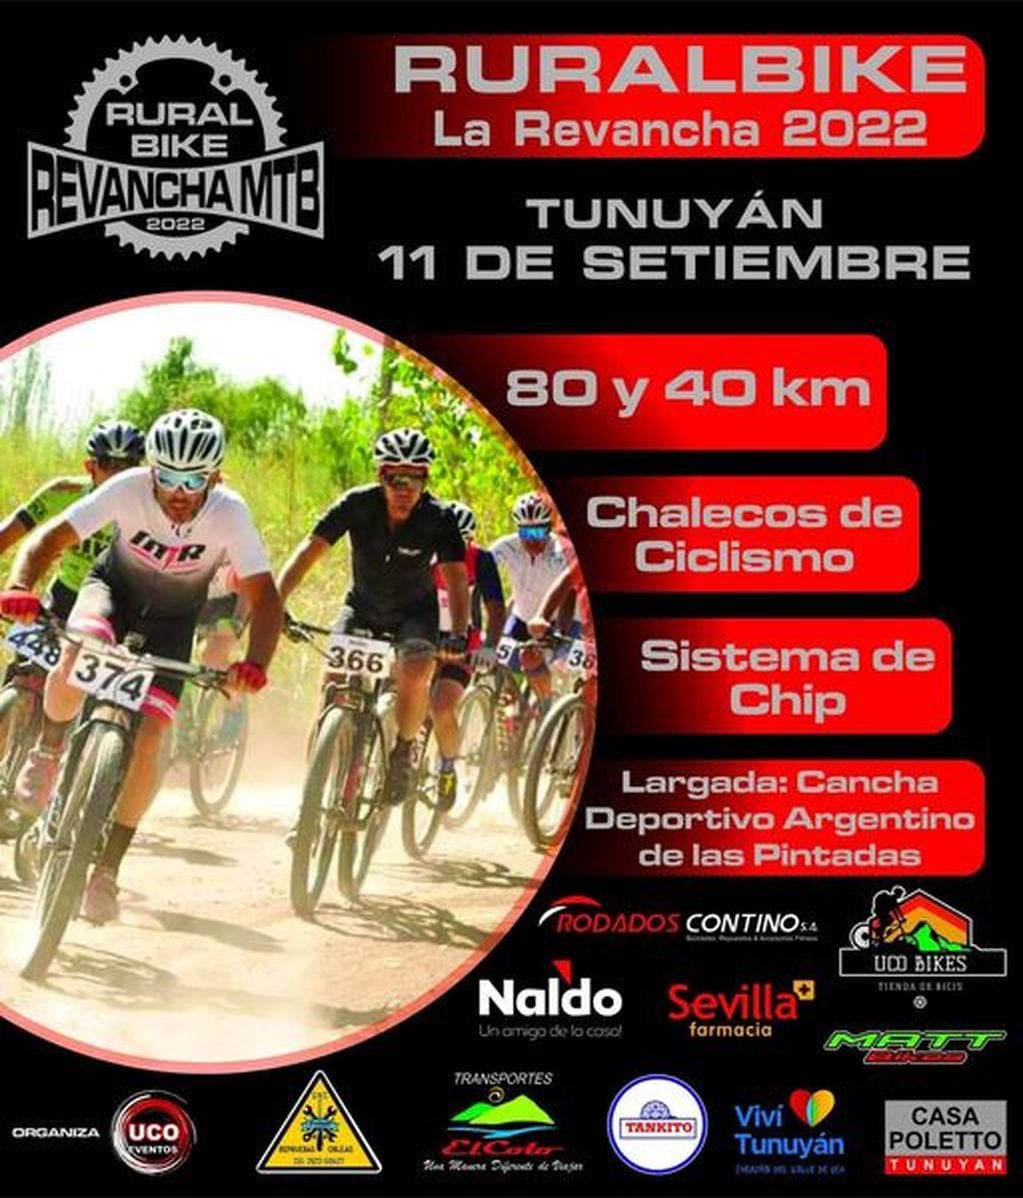 El 11 de setiembre se disputará la 15ta edición del Rural Bike de Tunuyán.